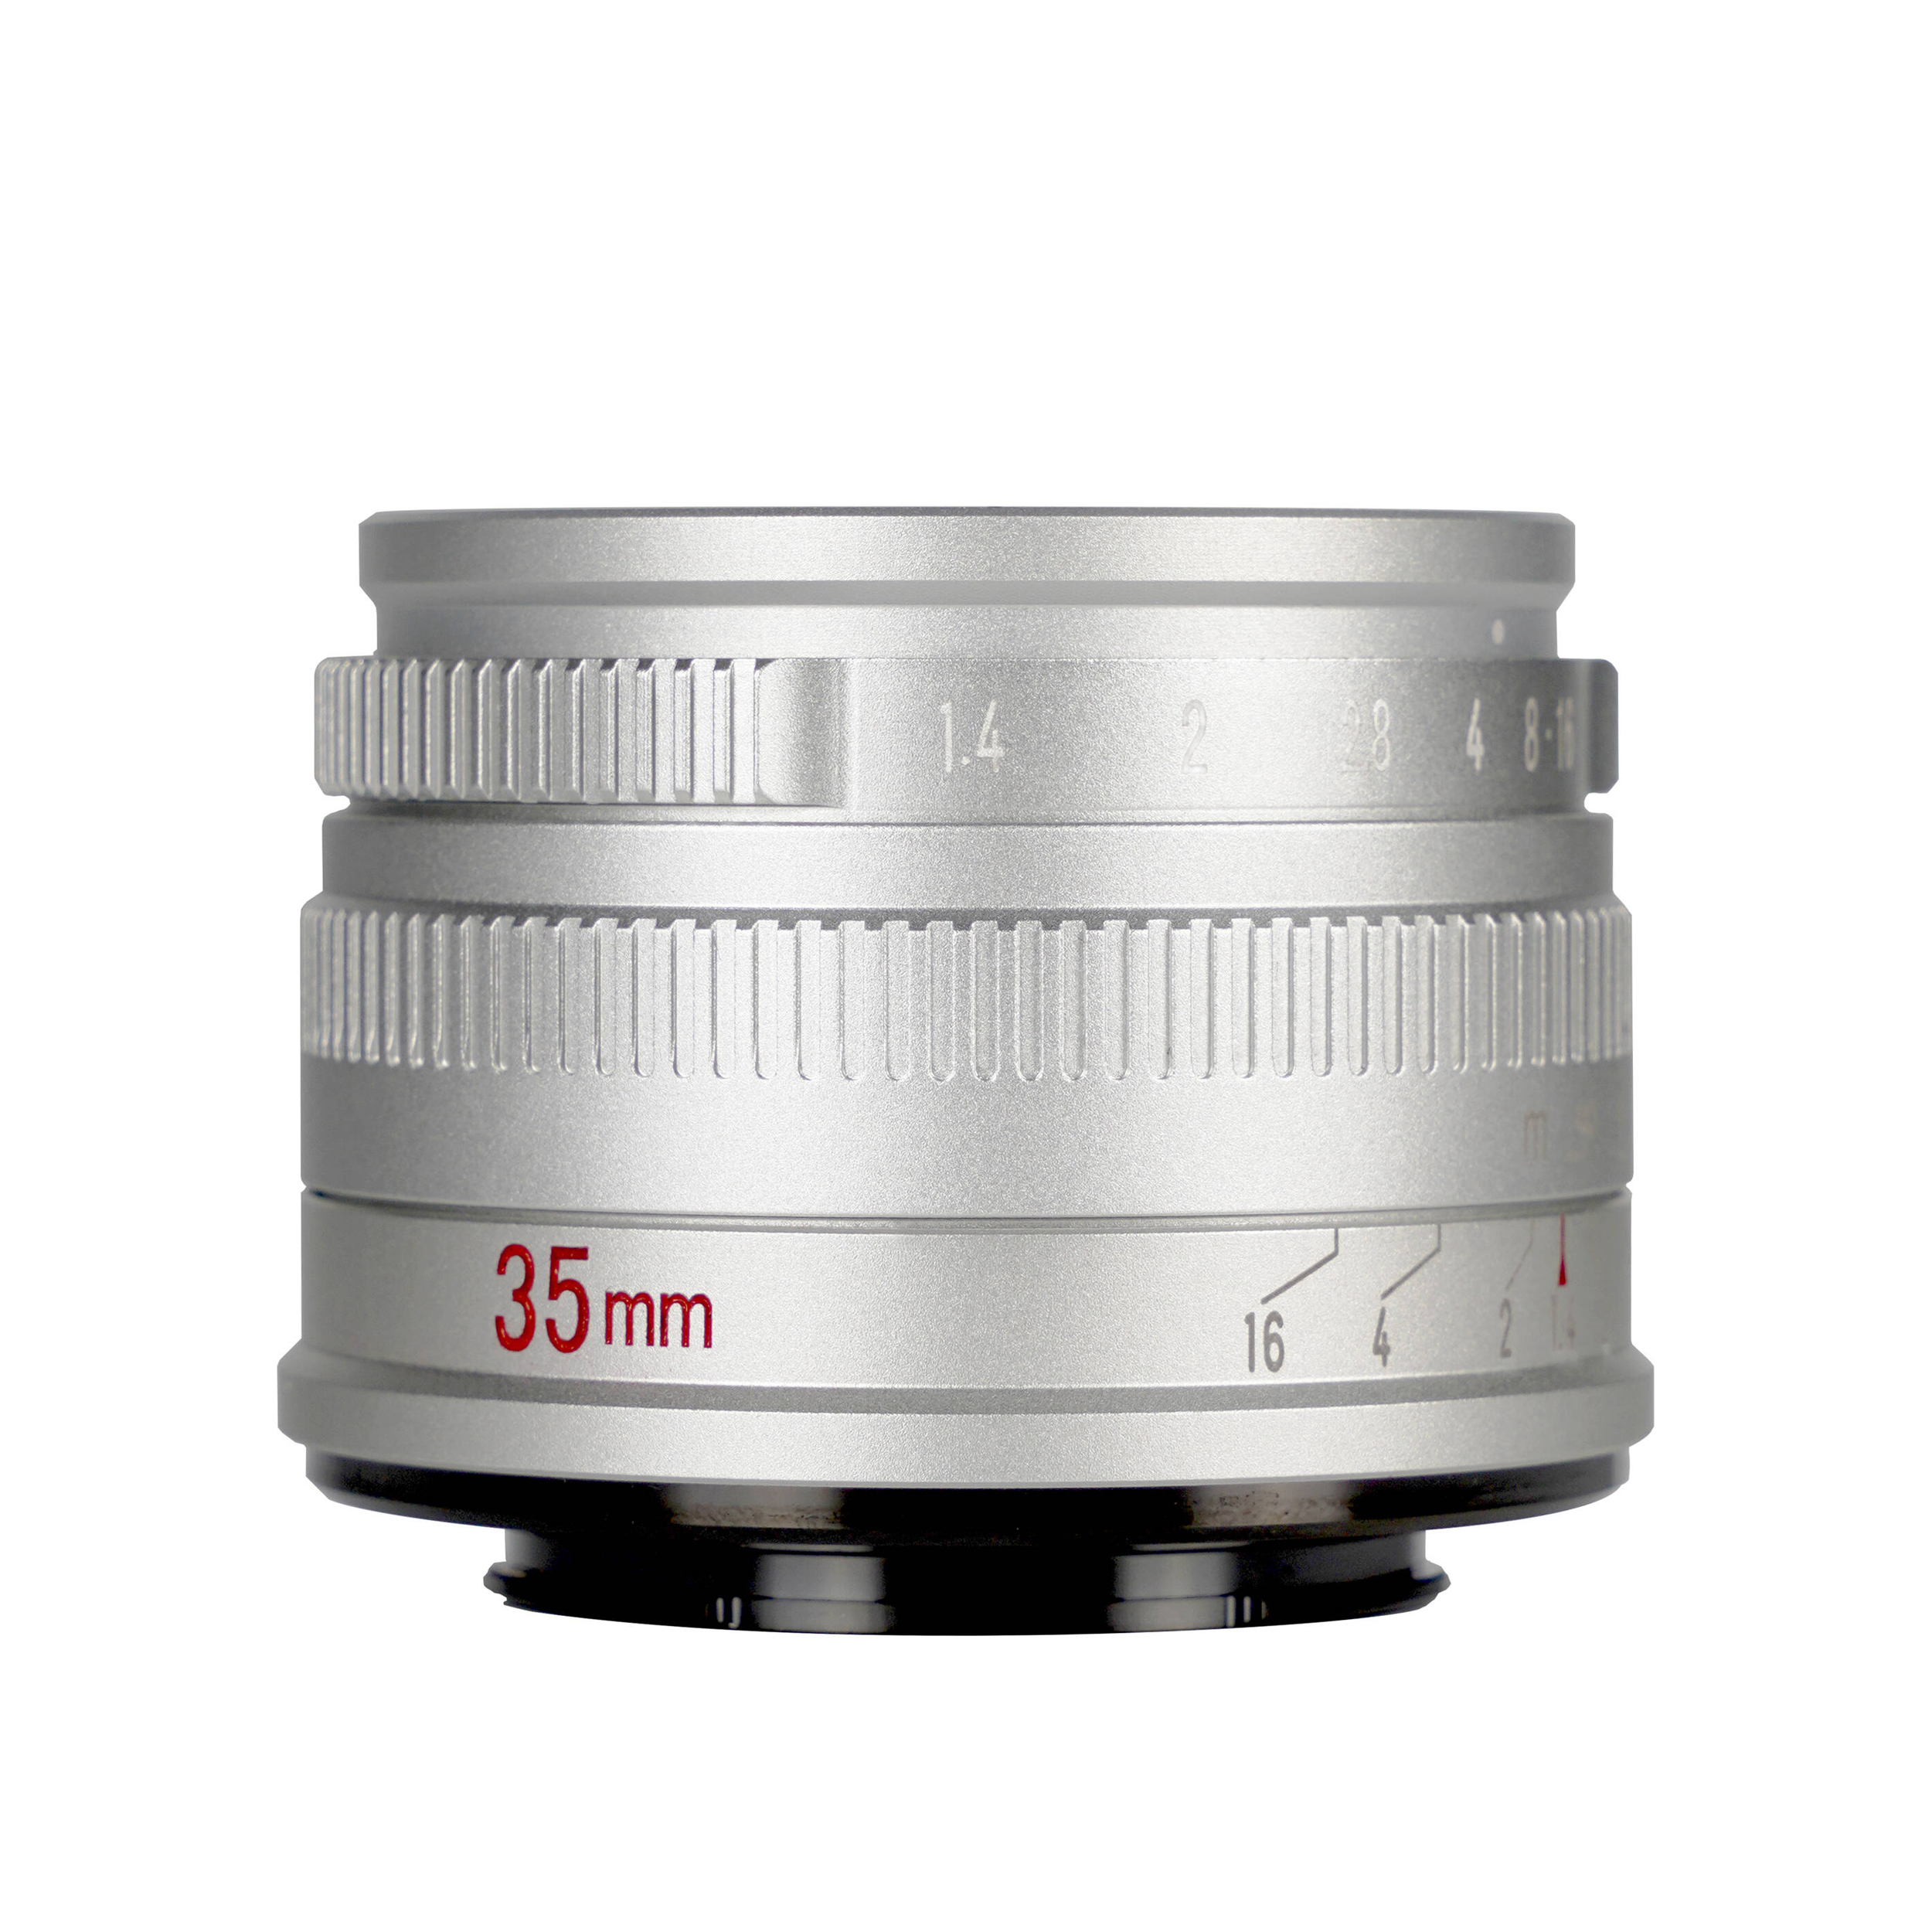 7artisans photoélectrique 35 mm f / 1,4 objectif pour le support Sony E